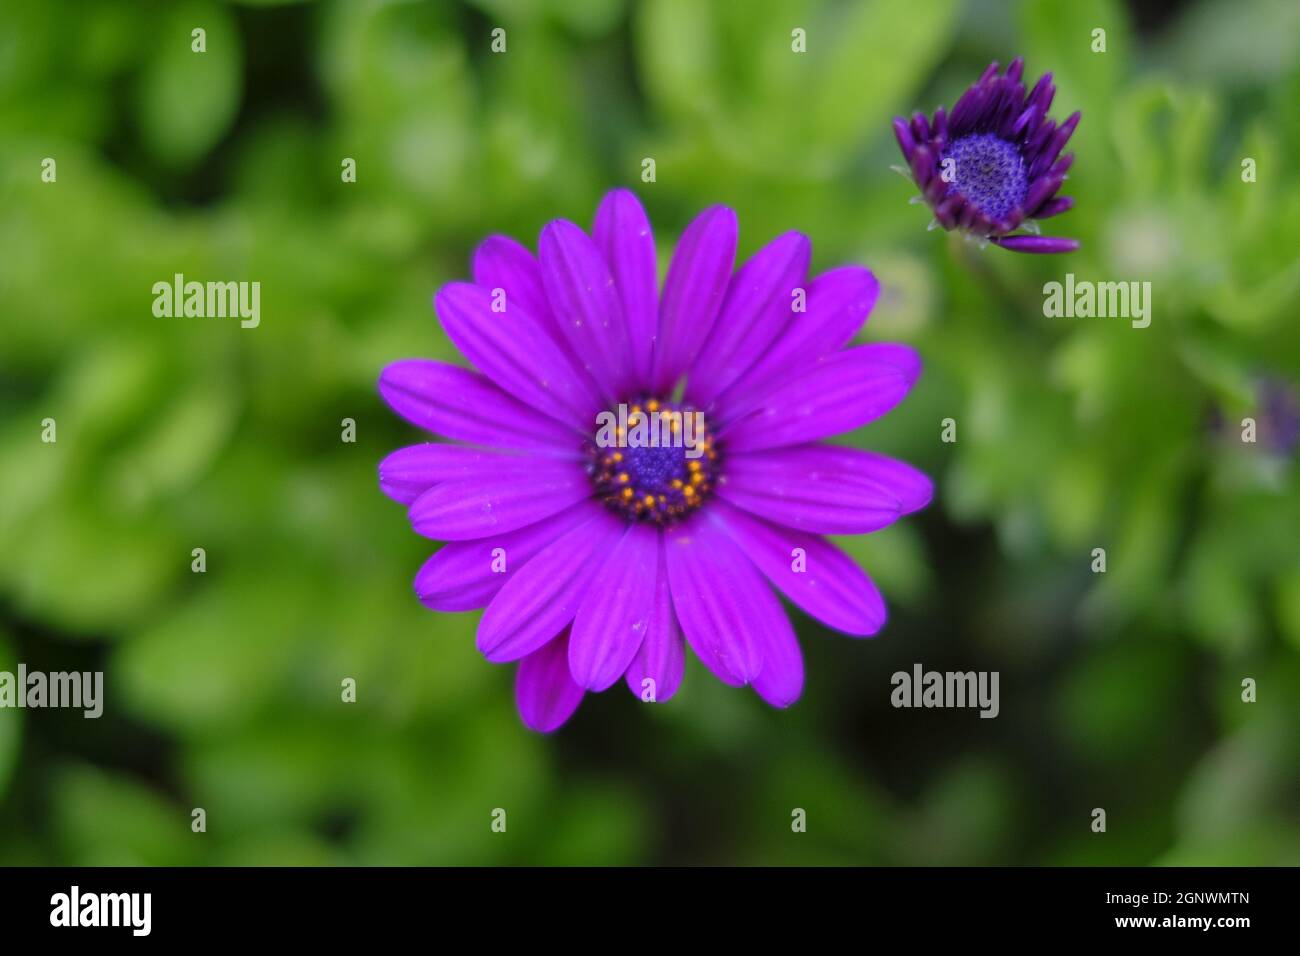 Die schöne violette Osteospermum oder afrikanische Gänseblümchen Blume isoliert auf einem grünen Hintergrund Stockfoto